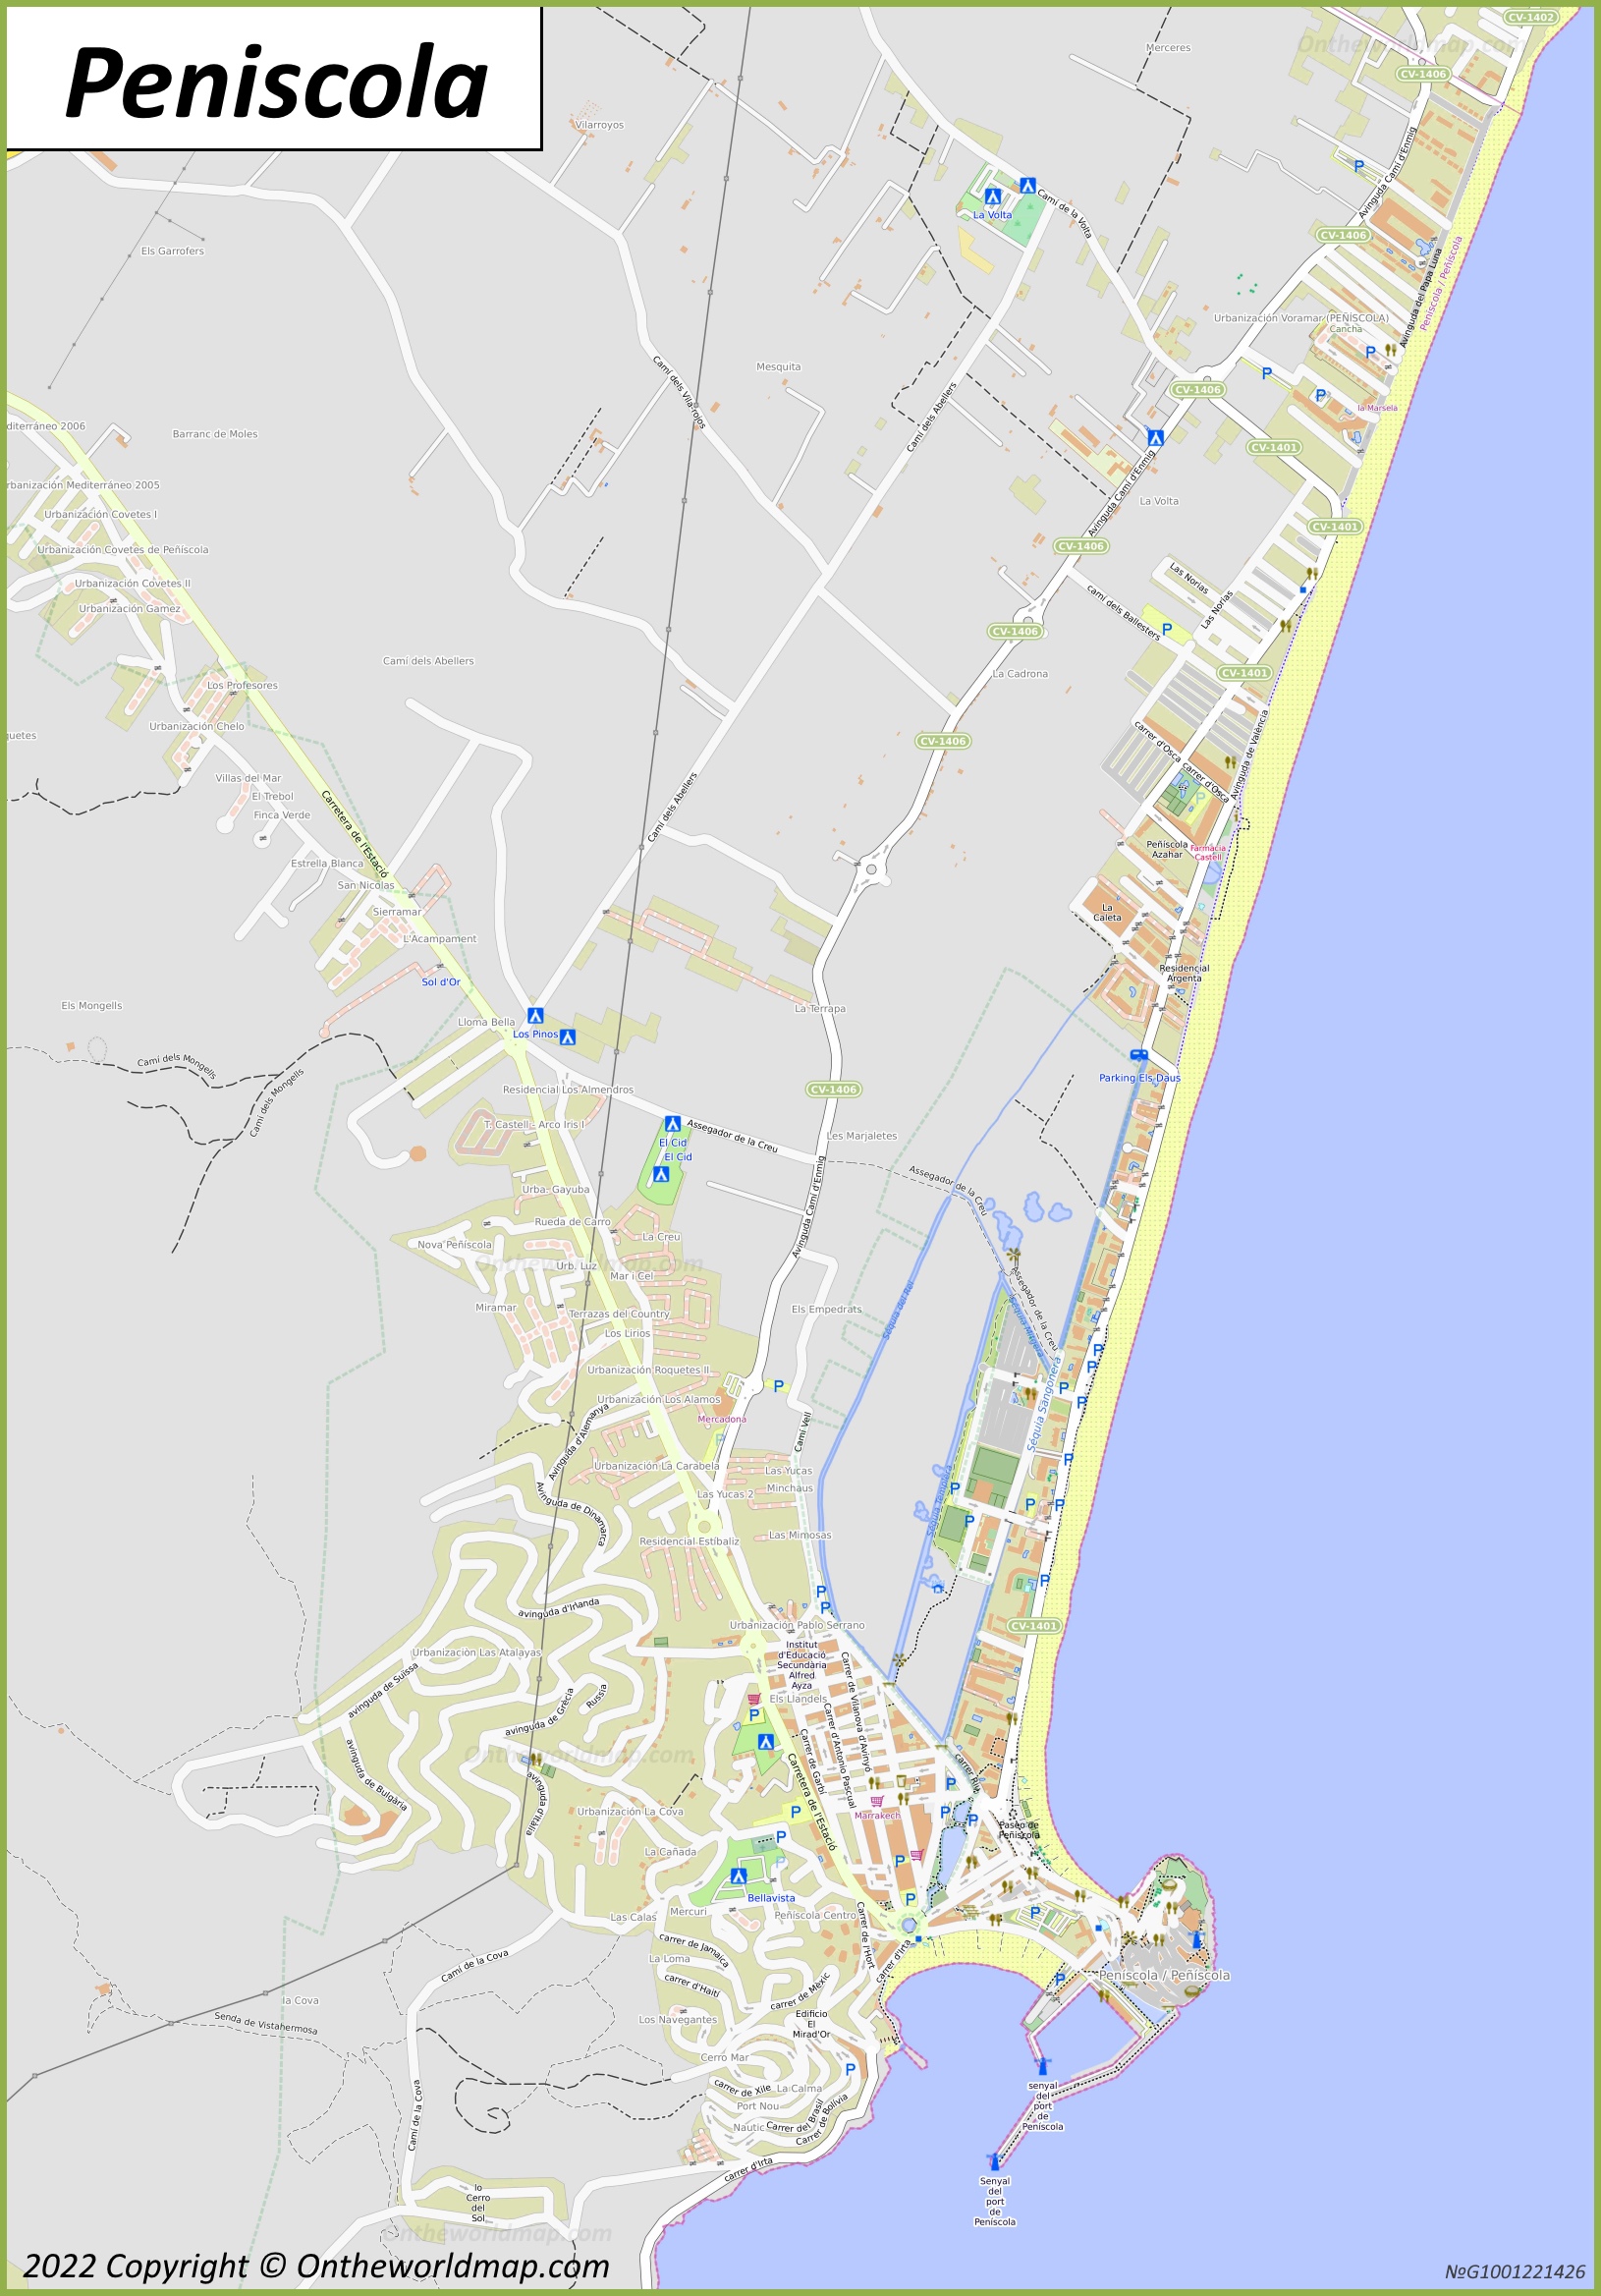 Mapa de los alrededores de Peñíscola